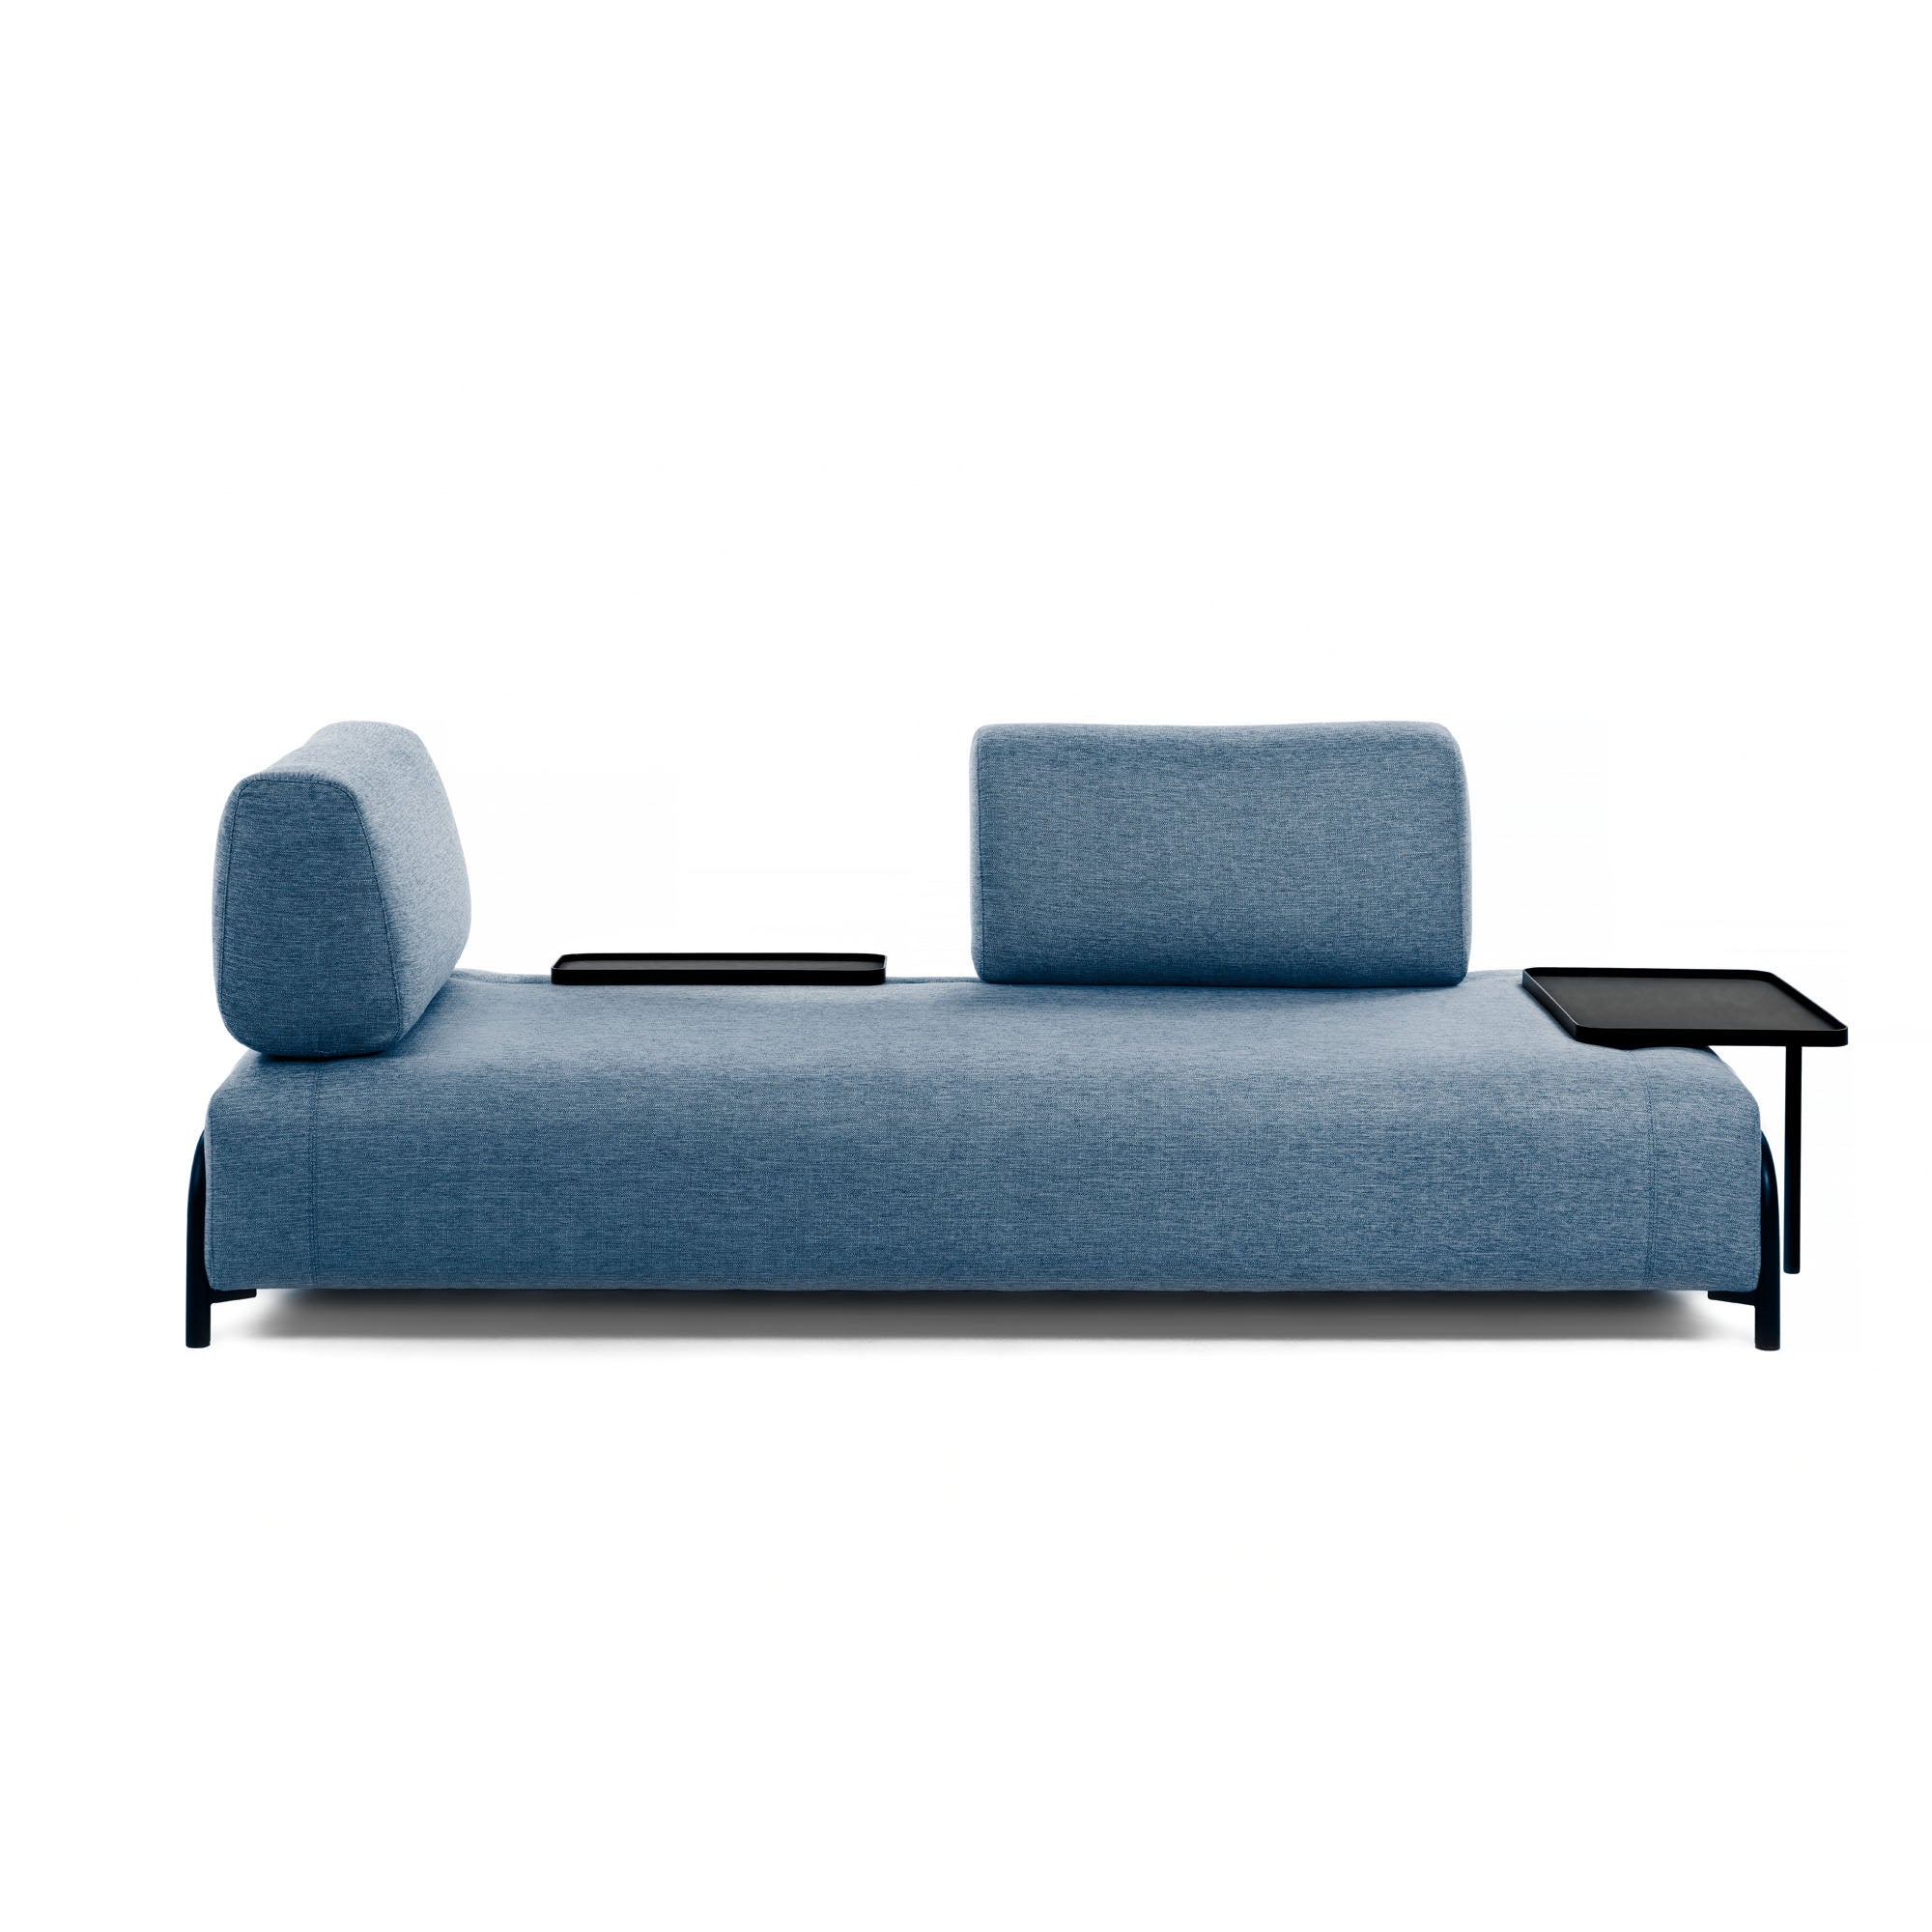 Compo 3 személyes kanapé nagy tálcával, kék színben, 252 cm